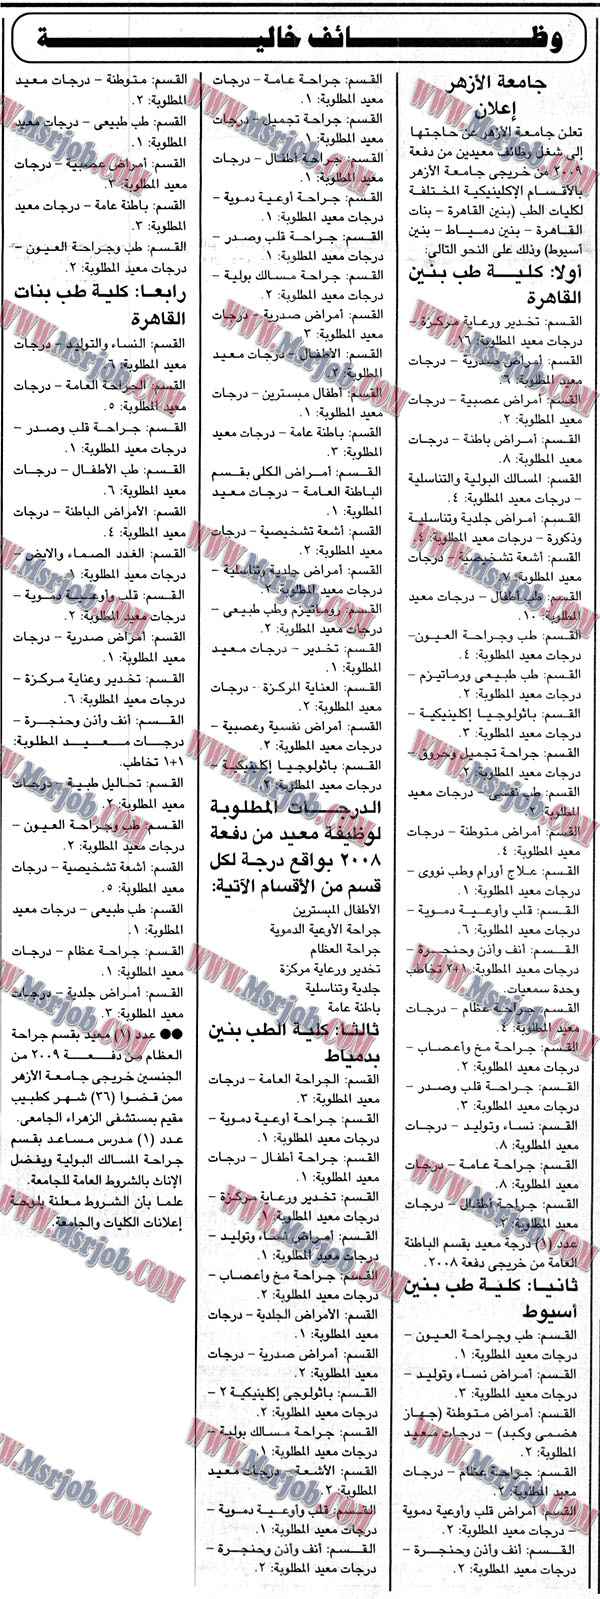 اعلان وظائف جامعة الازهر منشور بالجمهورية اليوم 3 / 1 / 2018